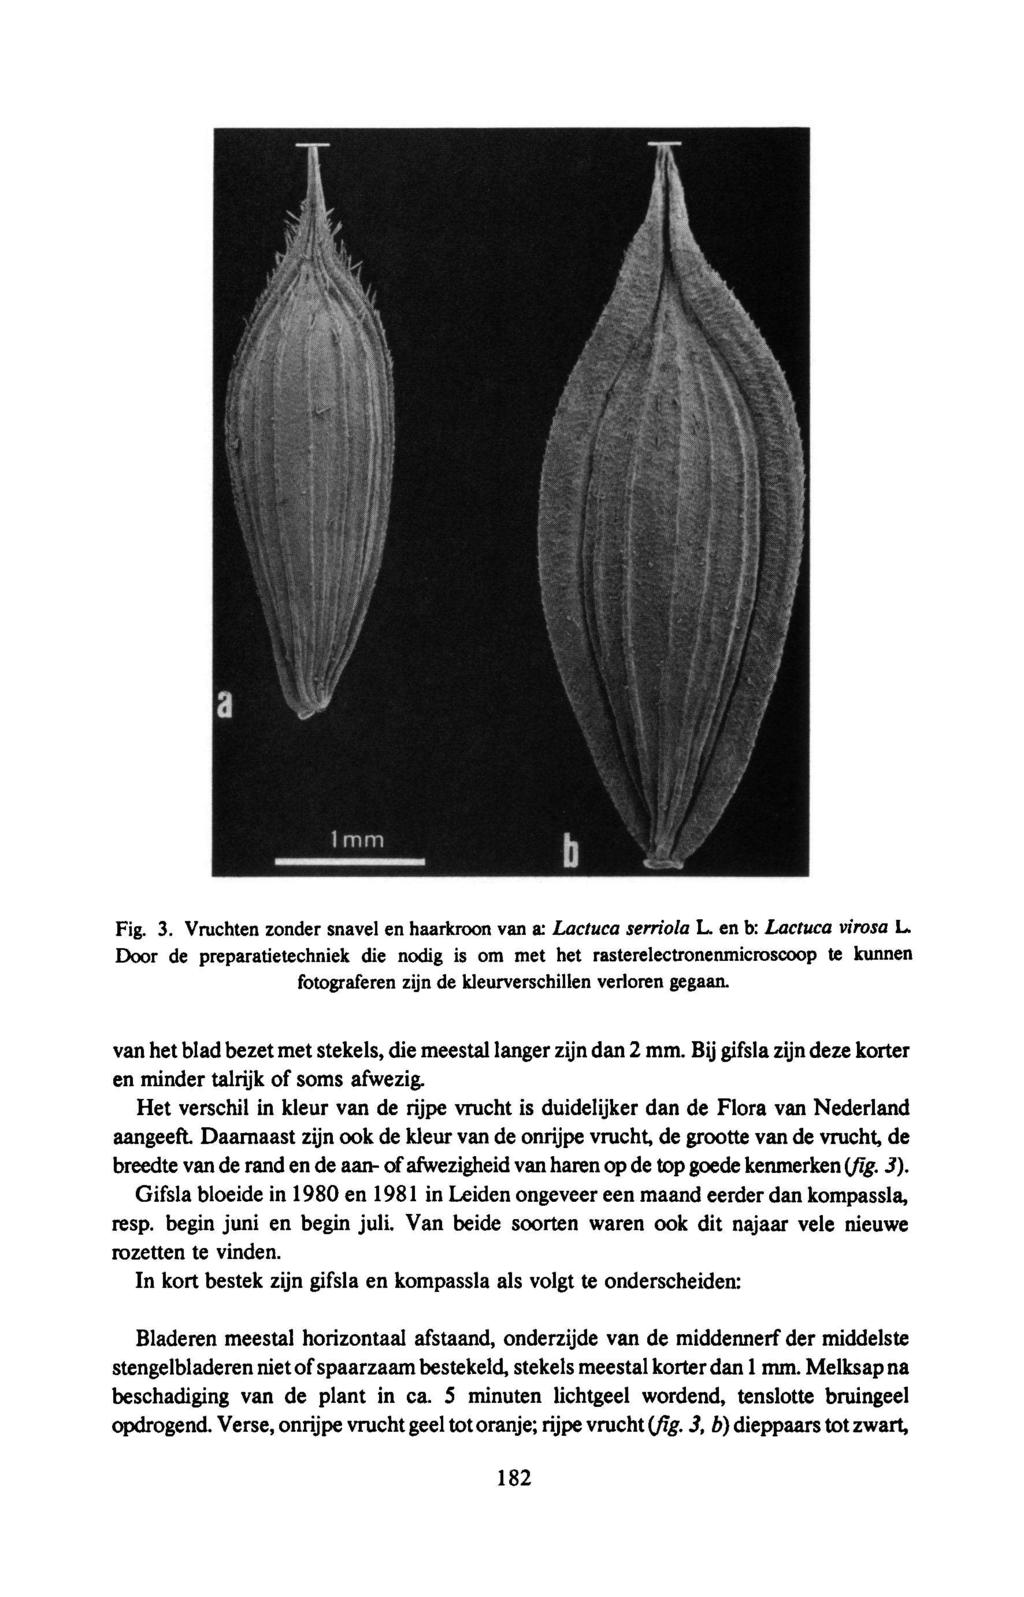 Fig. 3. Vruchten zonder snavel en haarkroon vanx Lactuca serriola L. en b: Lactuca virosa L.